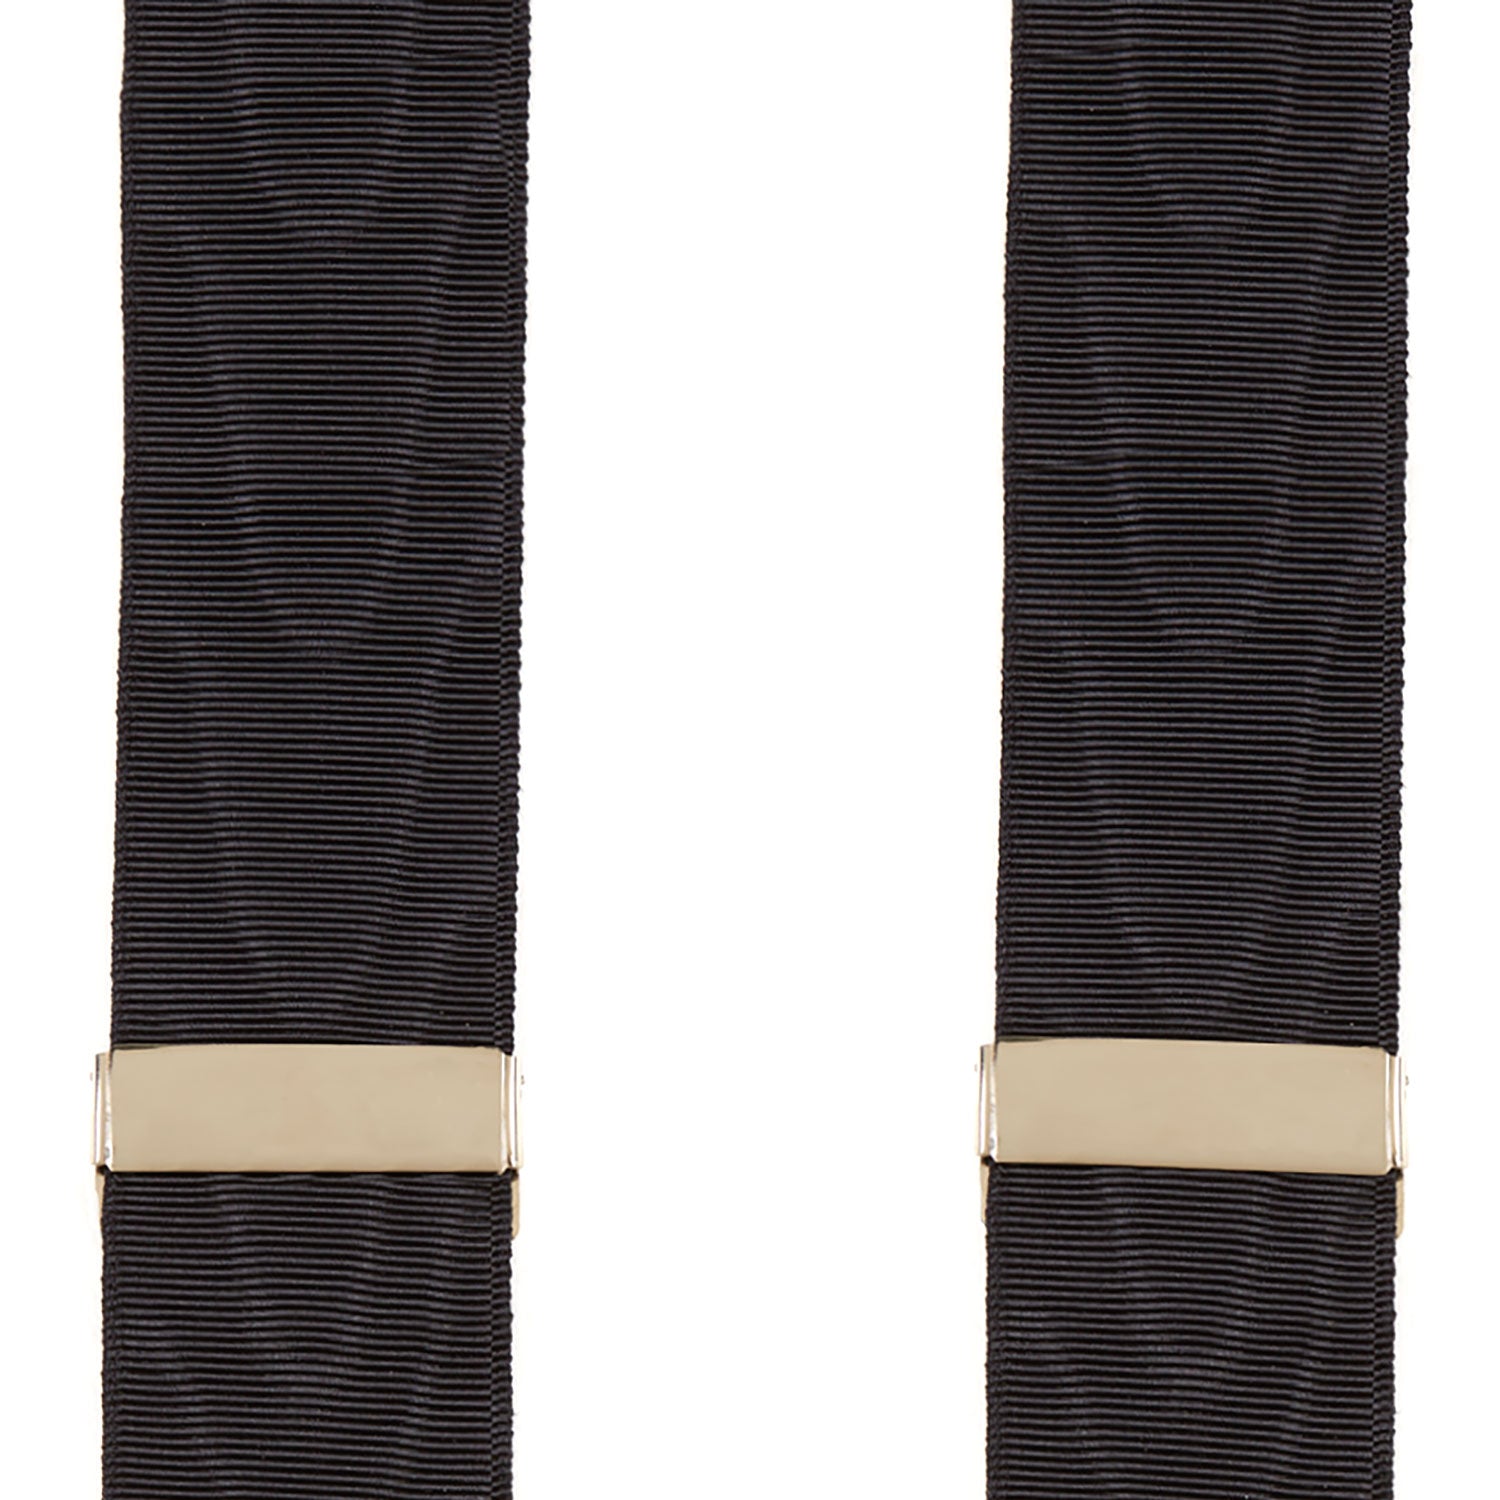 Black Adjustable Formal Braces